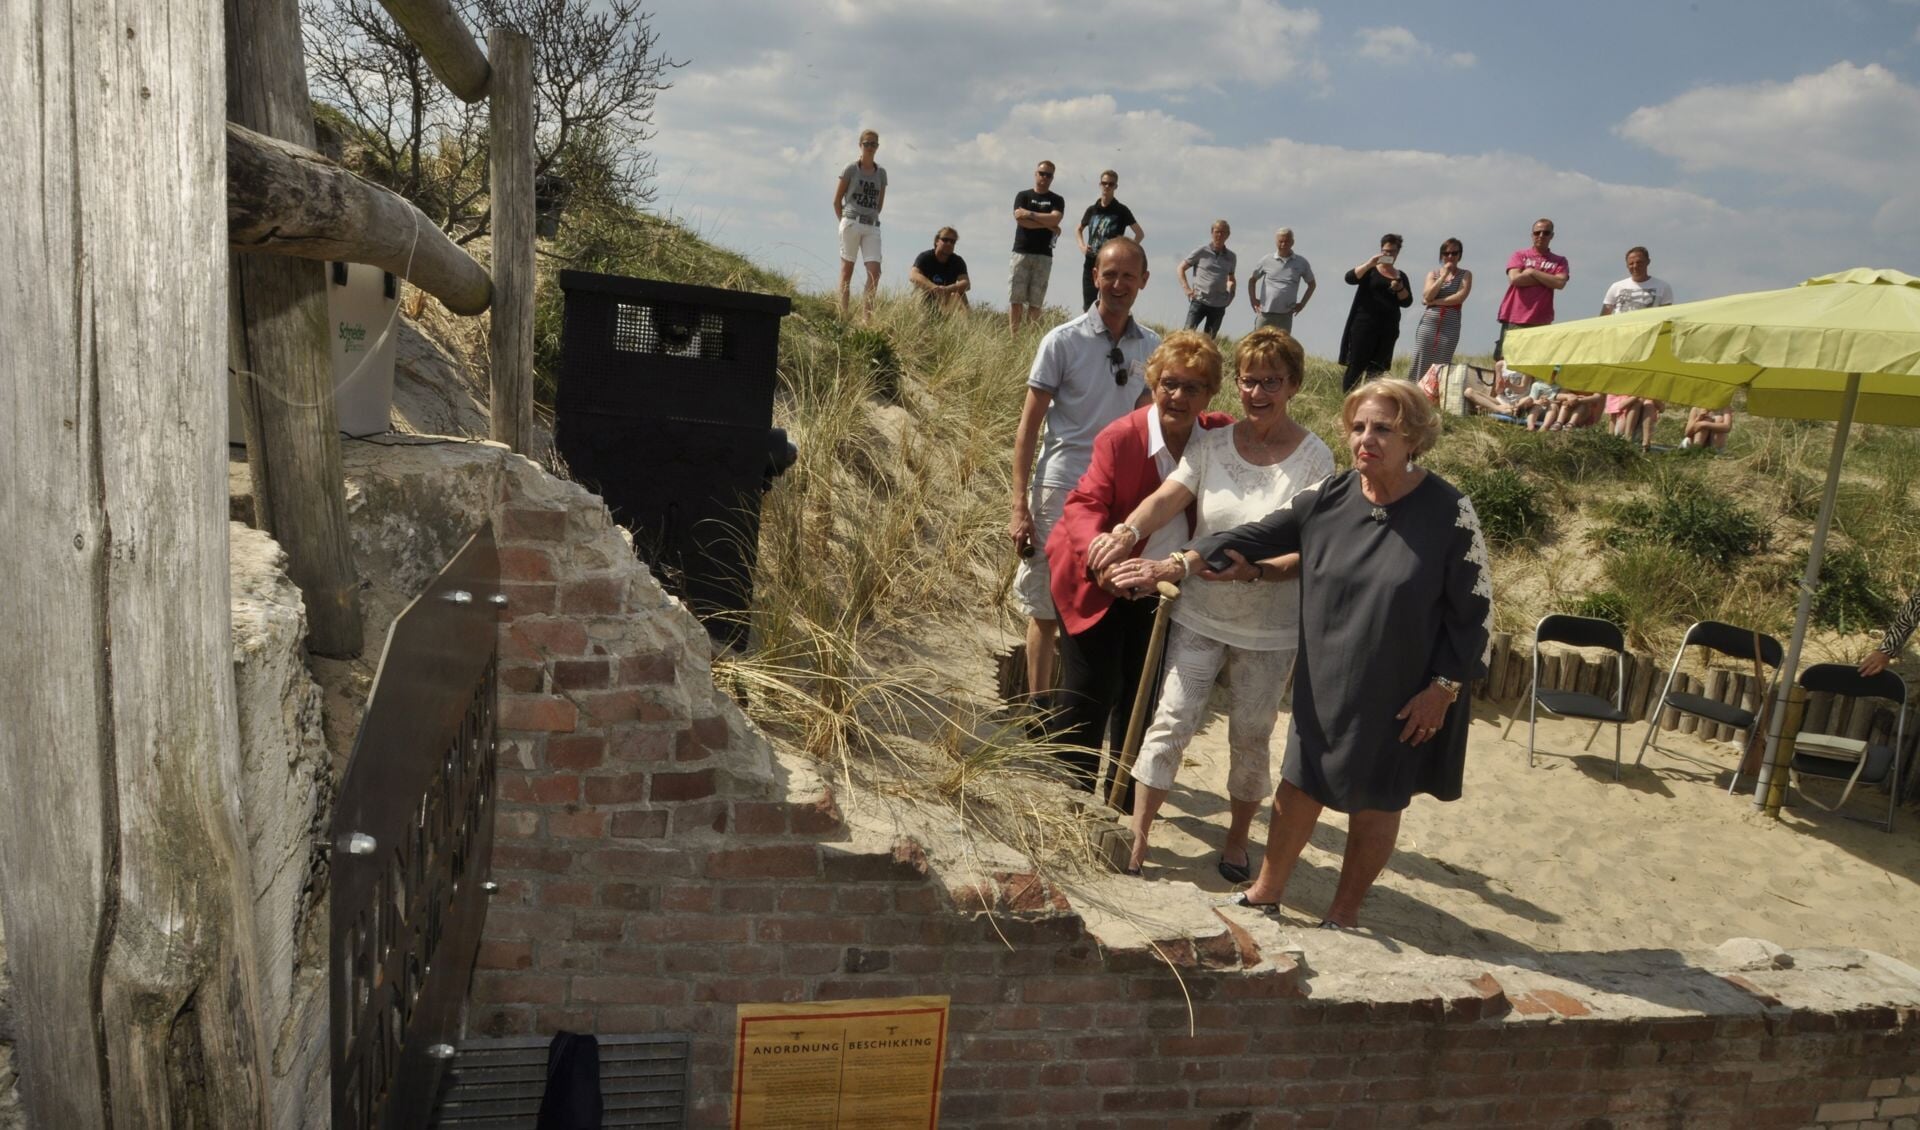 De bunker word officieel geopend door v.l.n.r. Klazien Beets-Boot, Cootje Visser en Jansje Blok.